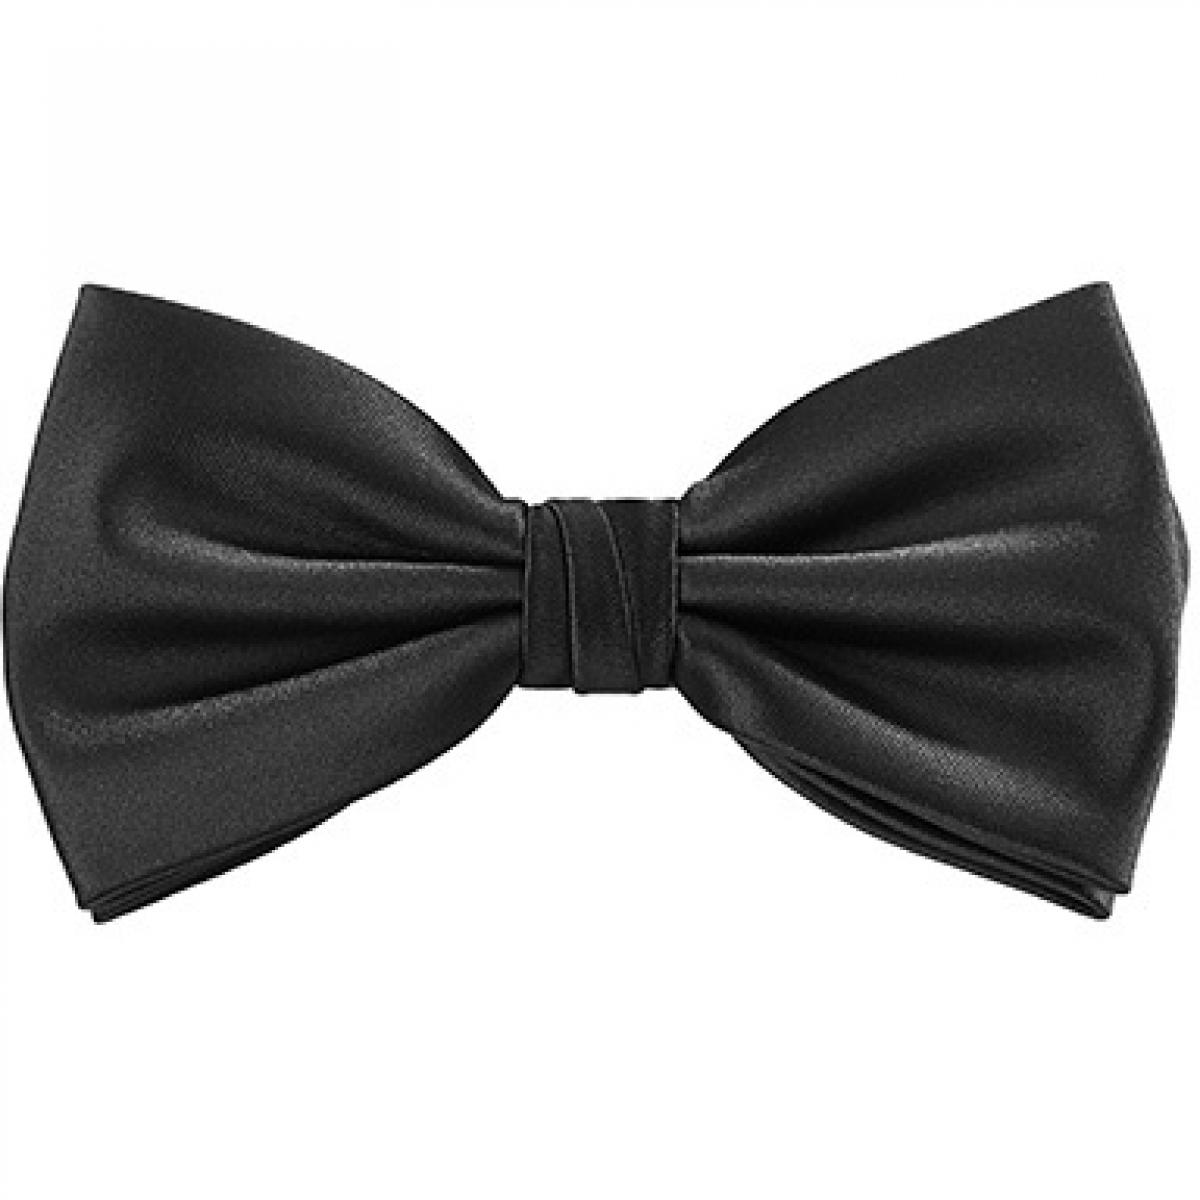 Hersteller: TYTO Herstellernummer: TT904 Artikelbezeichnung: Satin Bow Tie Farbe: Black